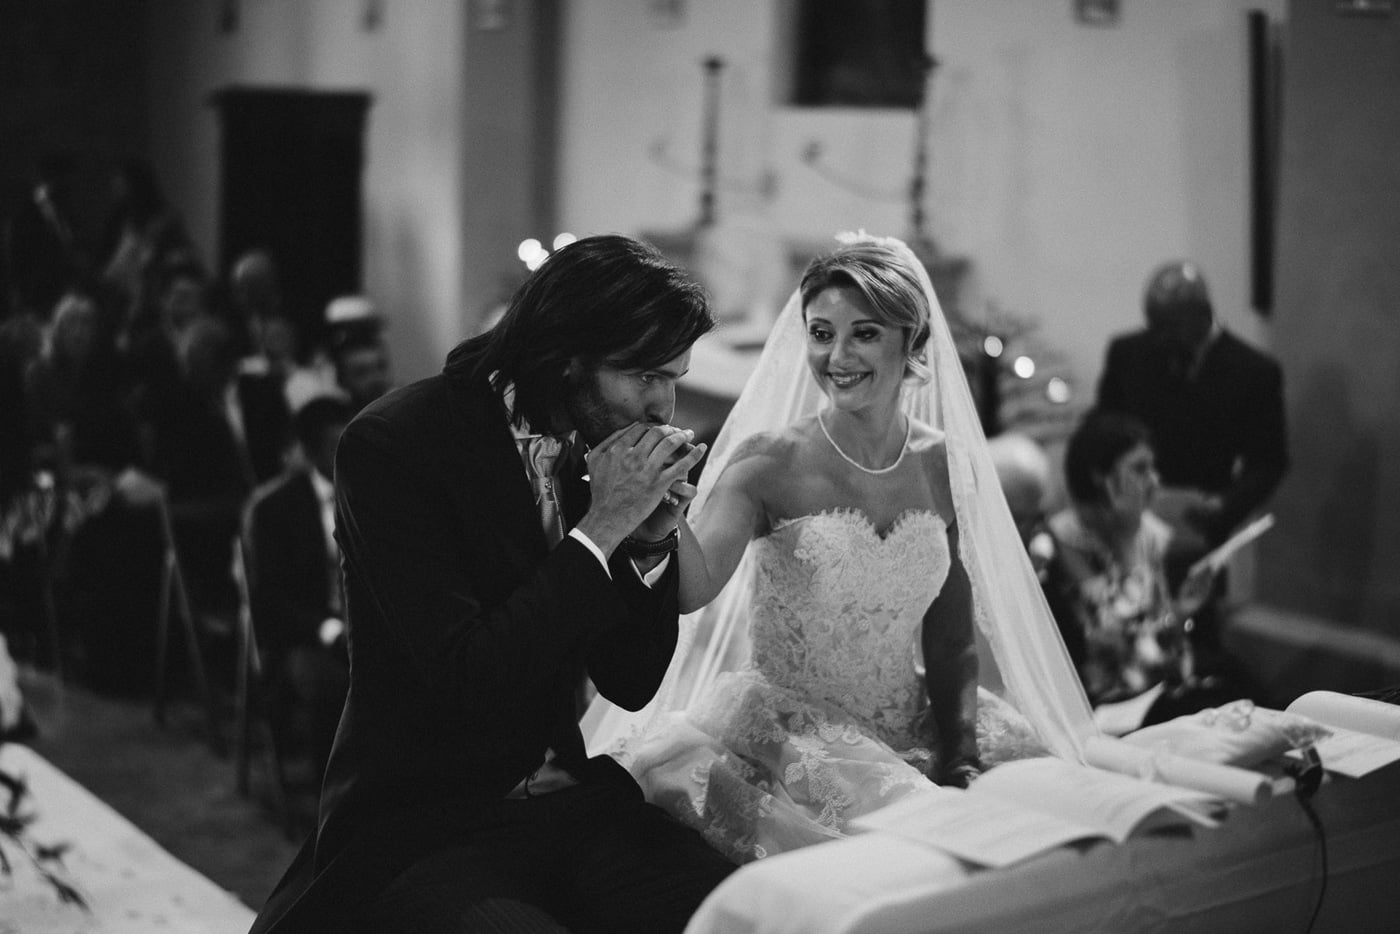 Andrea & Francesca | Wedding at Borgo San Luigi by Federico Pannacci 45